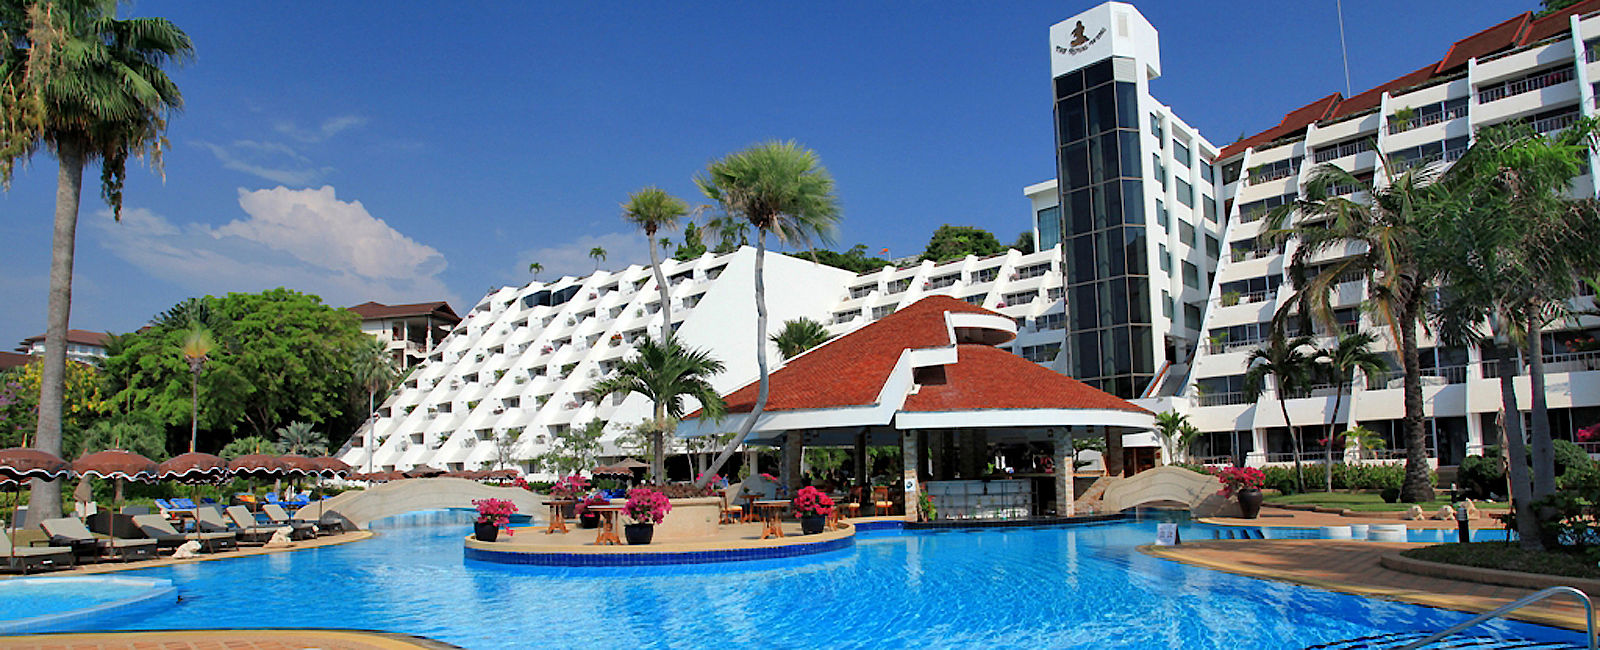 HOTELTEST
 Hotel Royal Wing Suites & Spa 
 Funkelnder Stern im touristischen Pattaya 